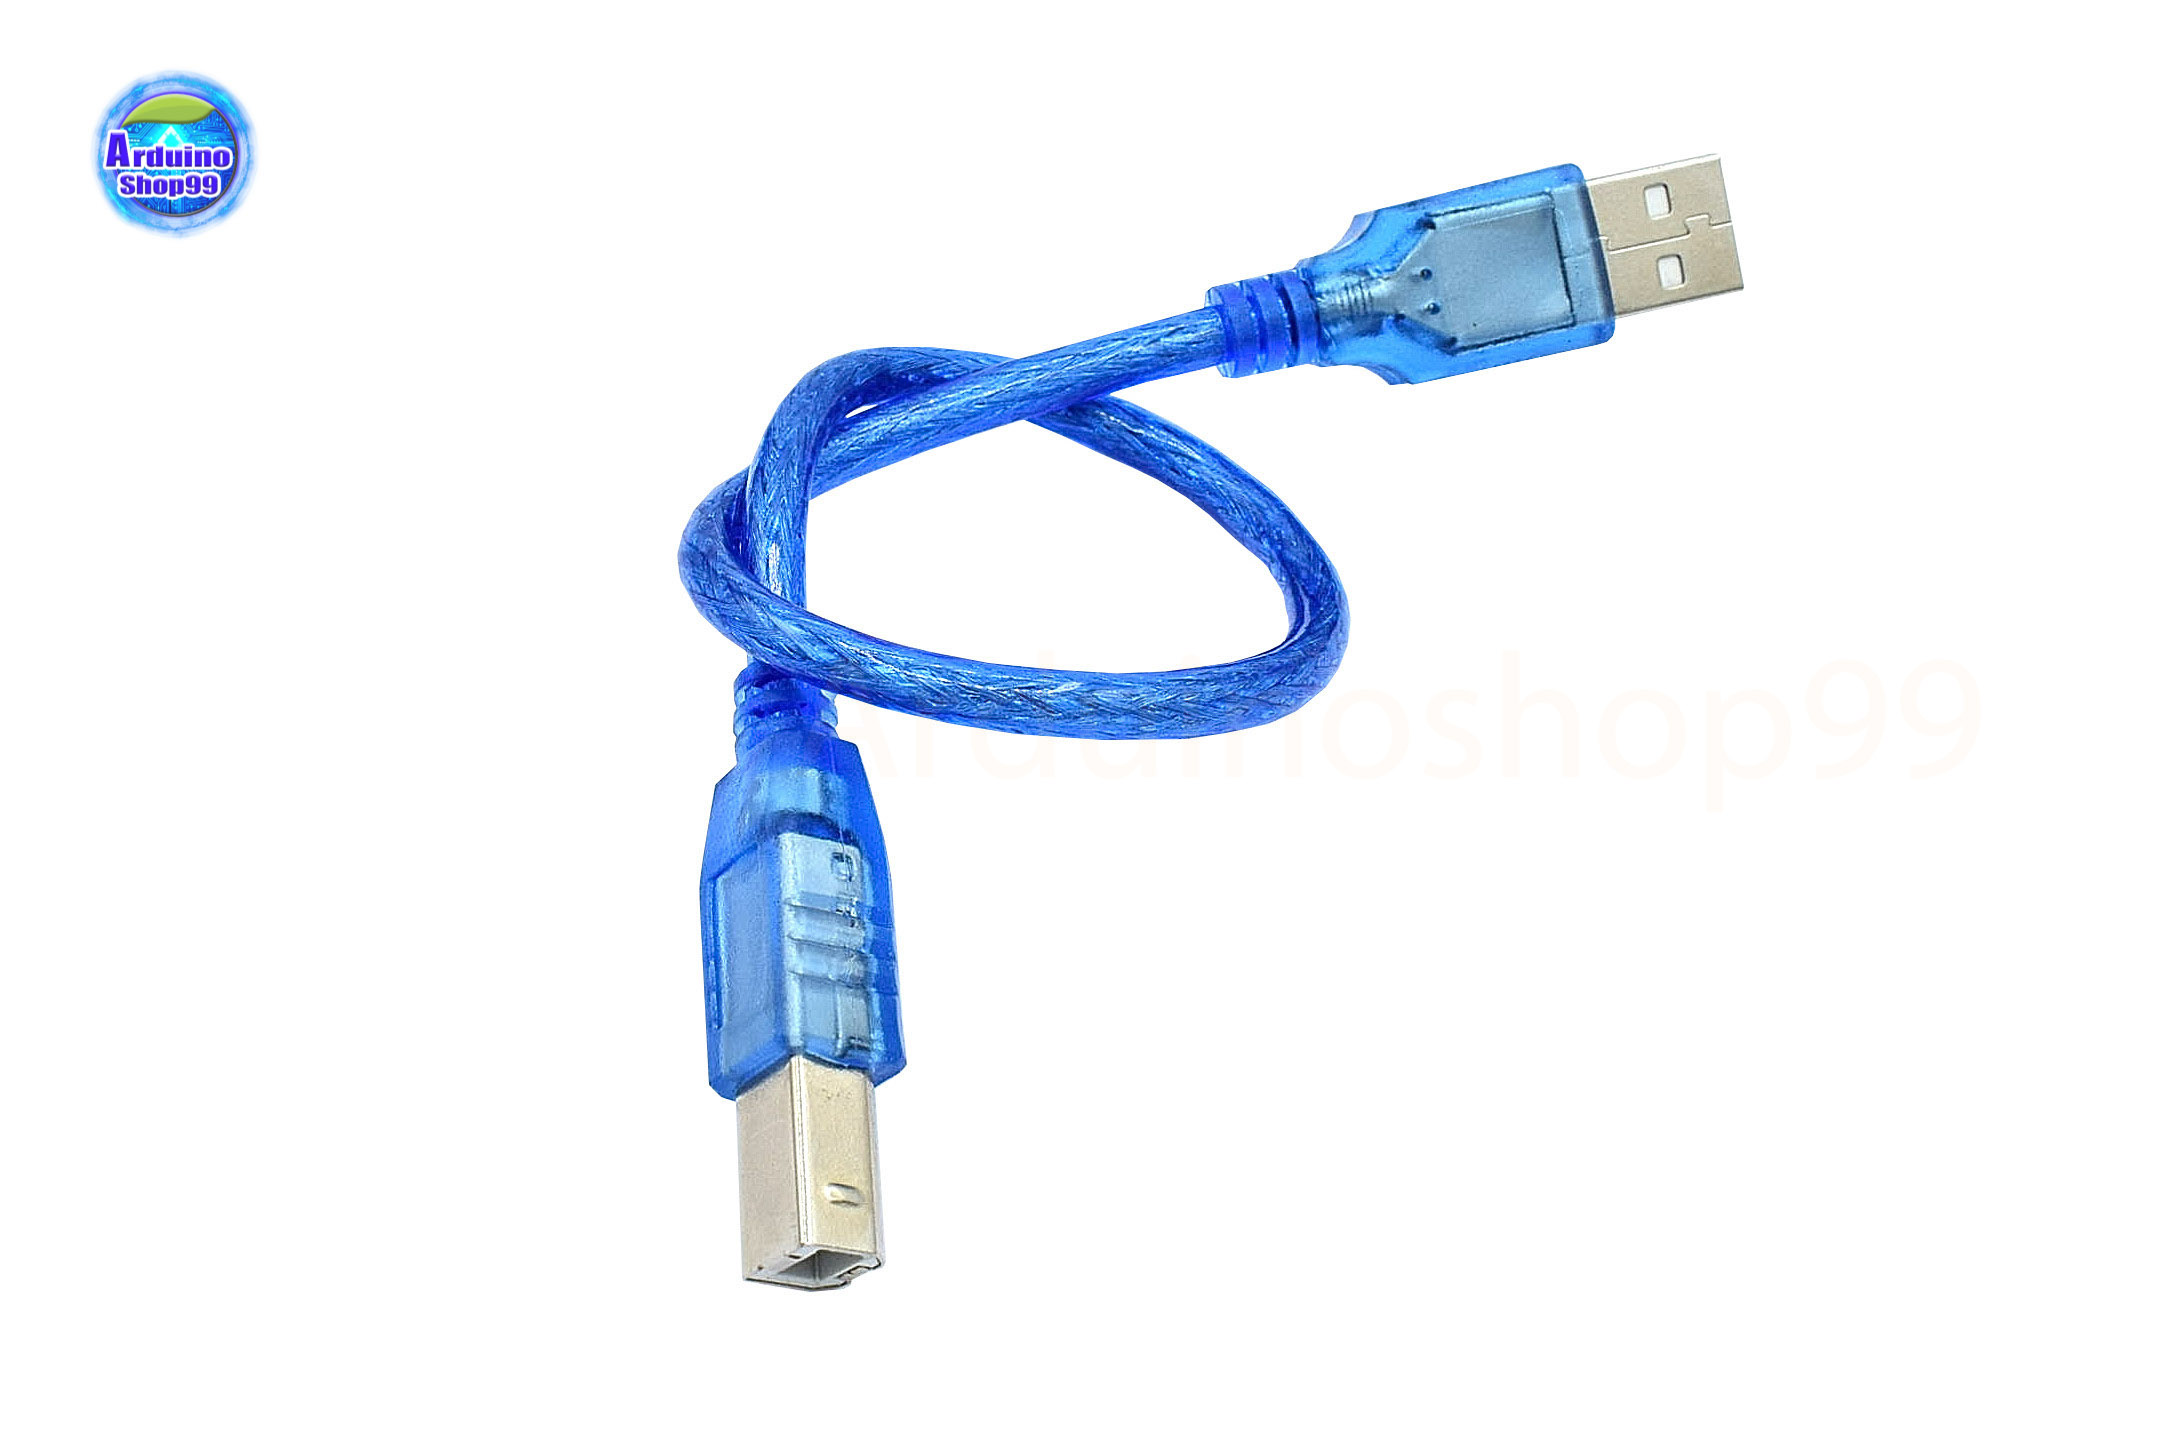 สาย Cable For Arduino UNO/MEGA (USB A to B) 30 Cm - Arduinoshop99 :  Inspired by LnwShop.com